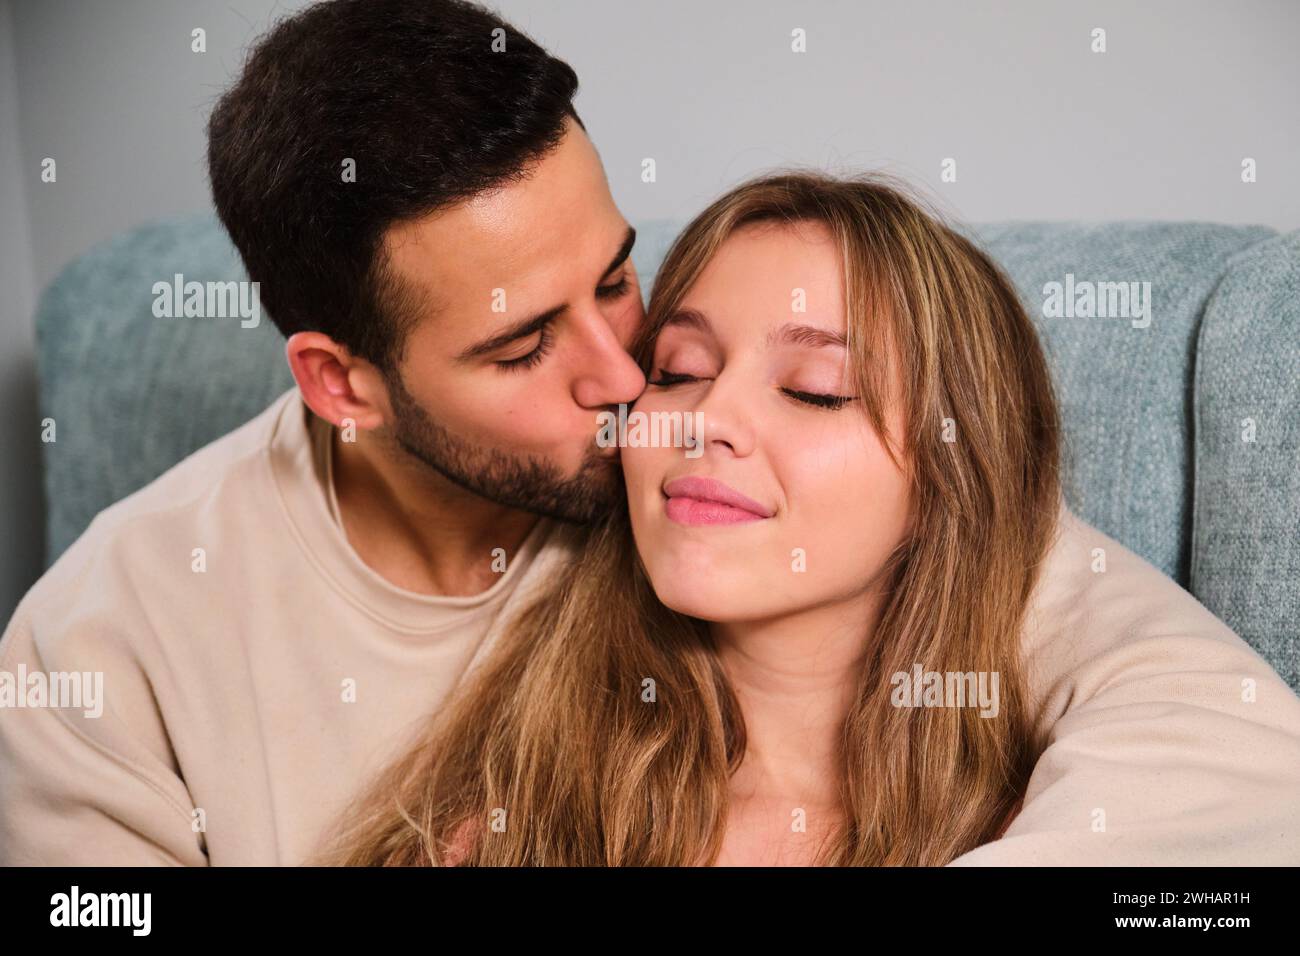 Spanisches junges Paar verliebt, Kuss auf die Wange. Stockfoto